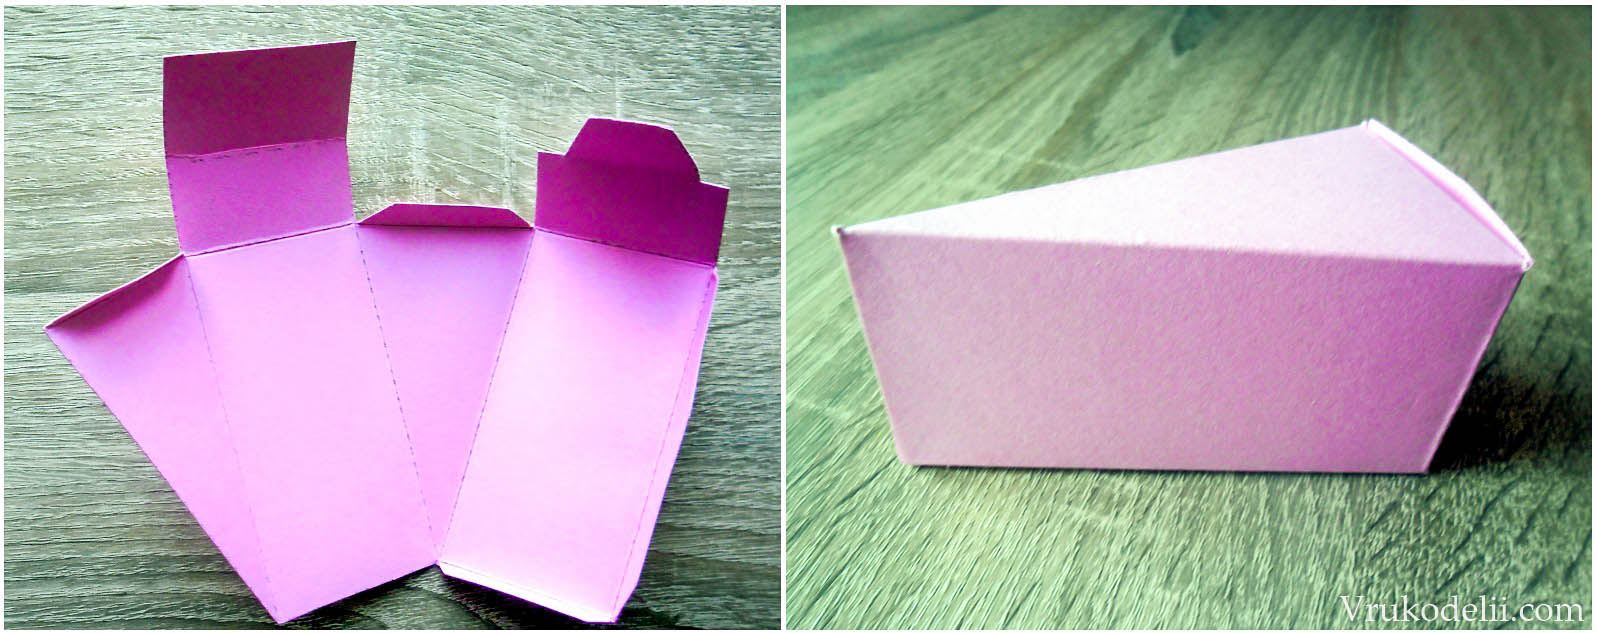 Как сделать коробочку из бумаги похожую на торт